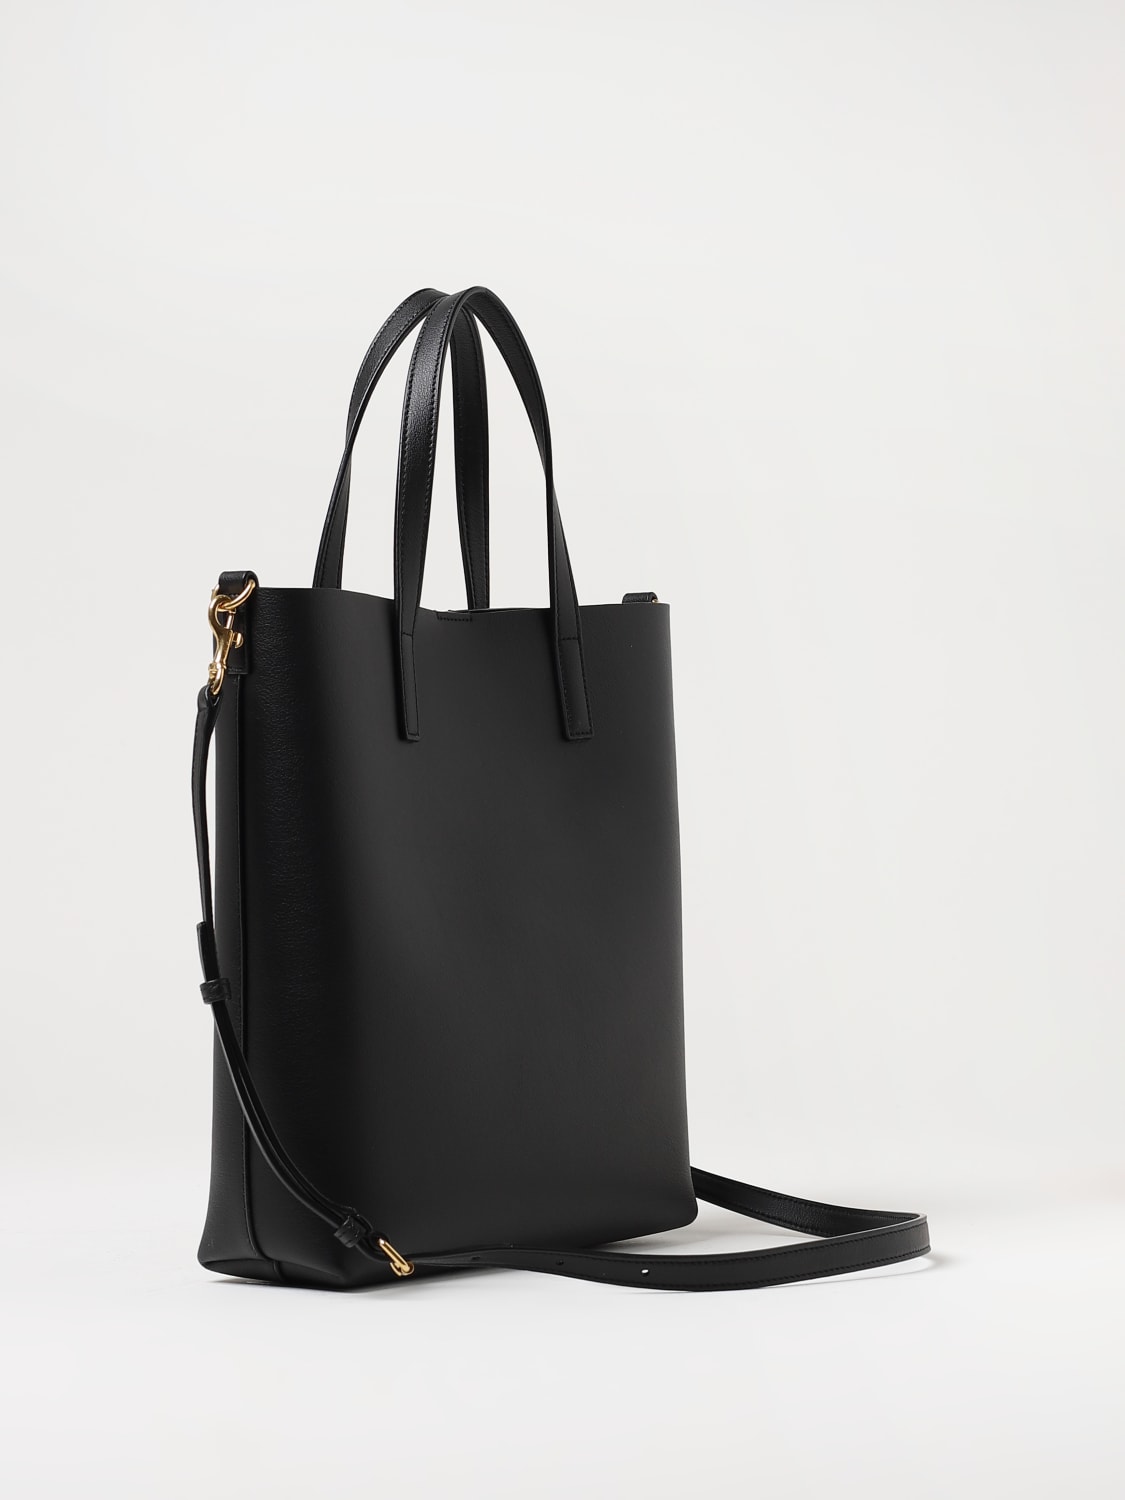 Cheap Saint Laurent Bags Outlet Sale, Saint Laurent Online Store